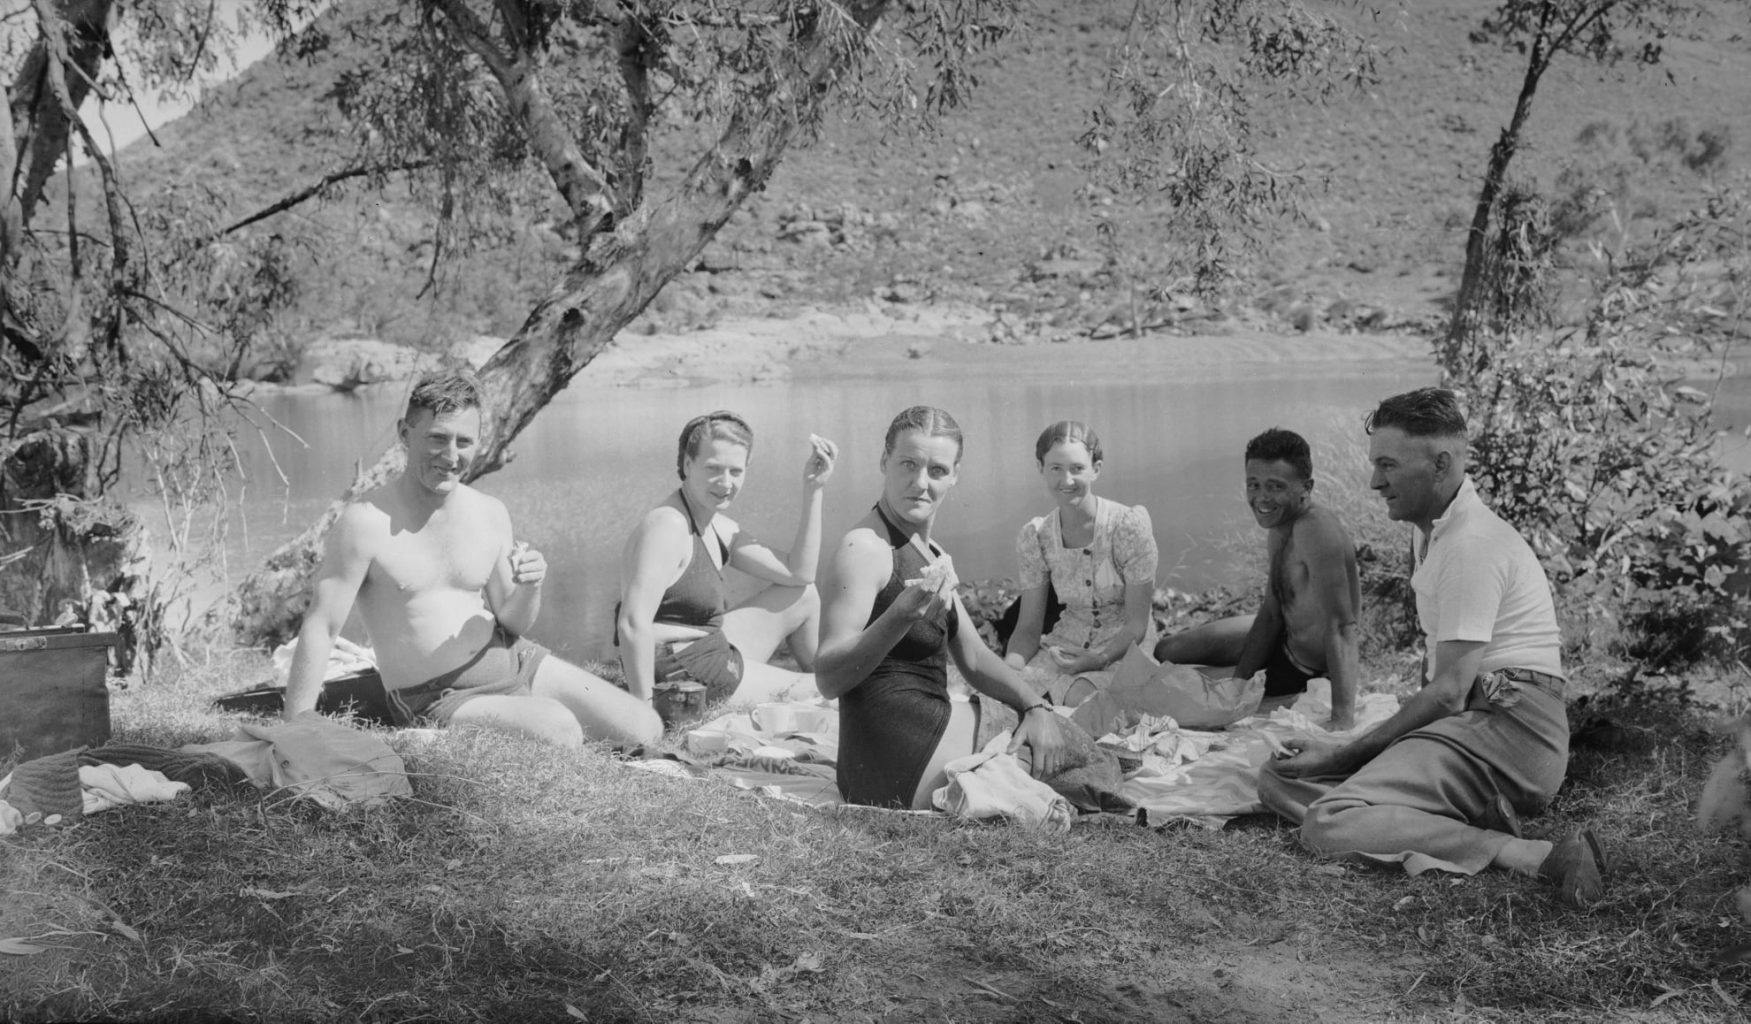 Marble Bar picnic ca 1941